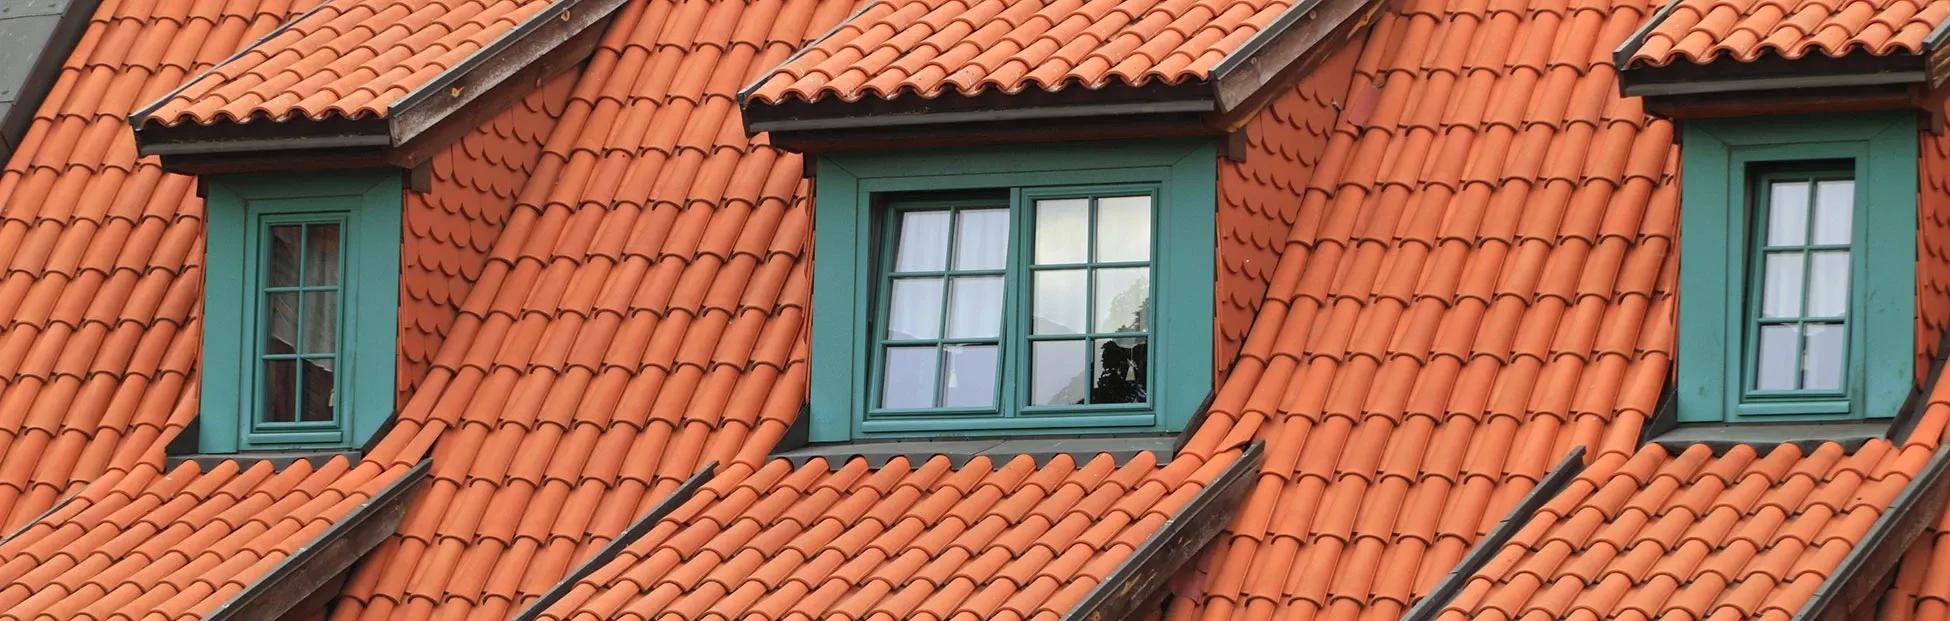 Takläggning, Nytt orange tegeltak med tealfärgade fönsterkupor